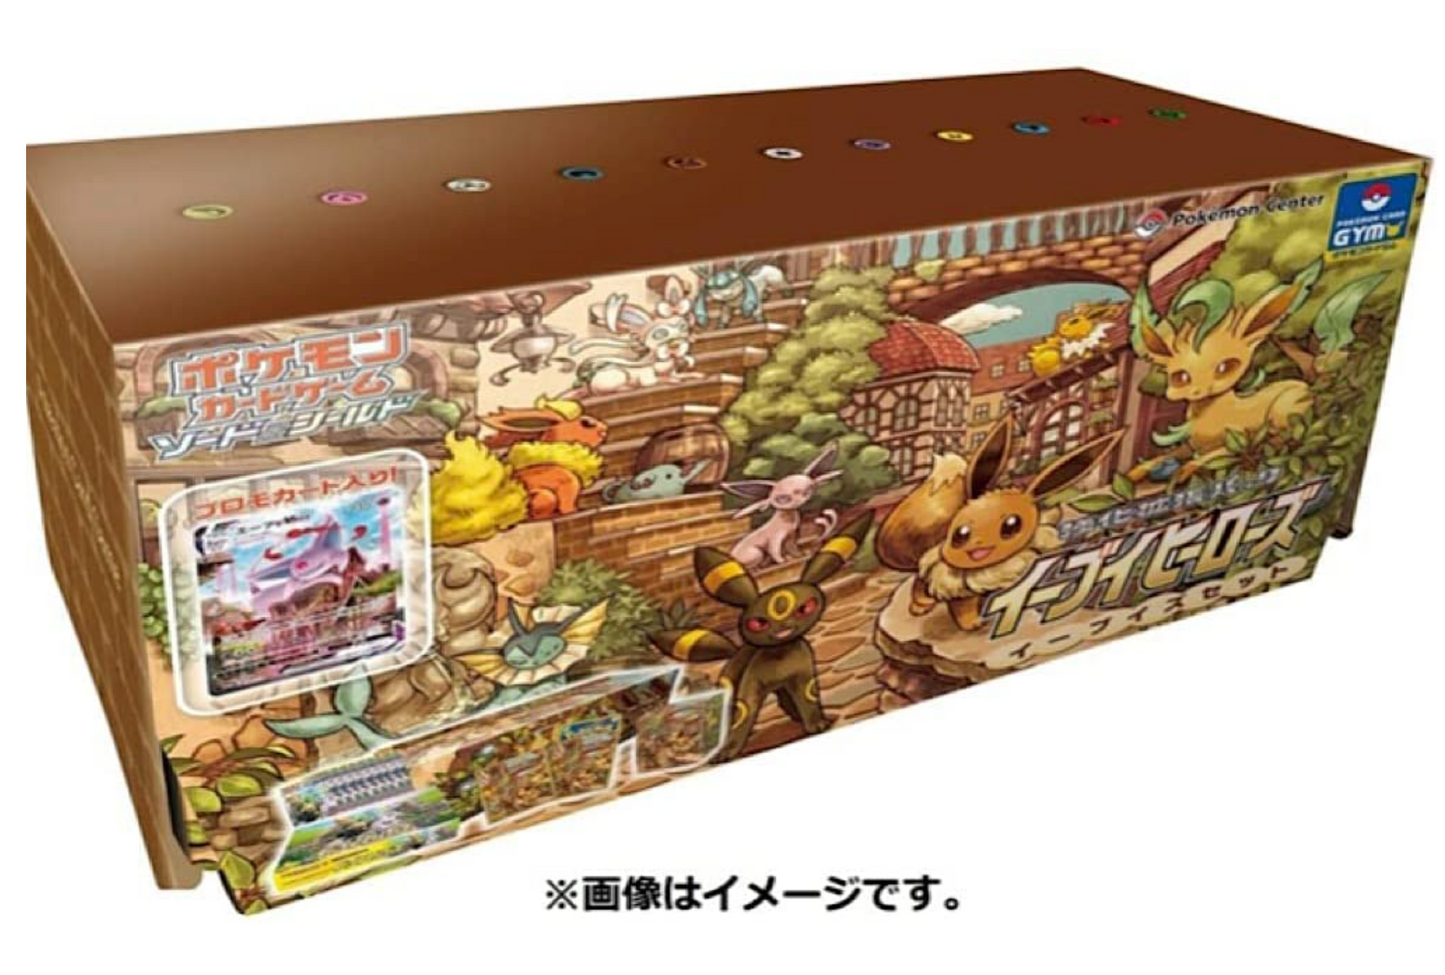 Sword & Shield Eevee Heroes Eevee's Set box Japanese NEW Sealed